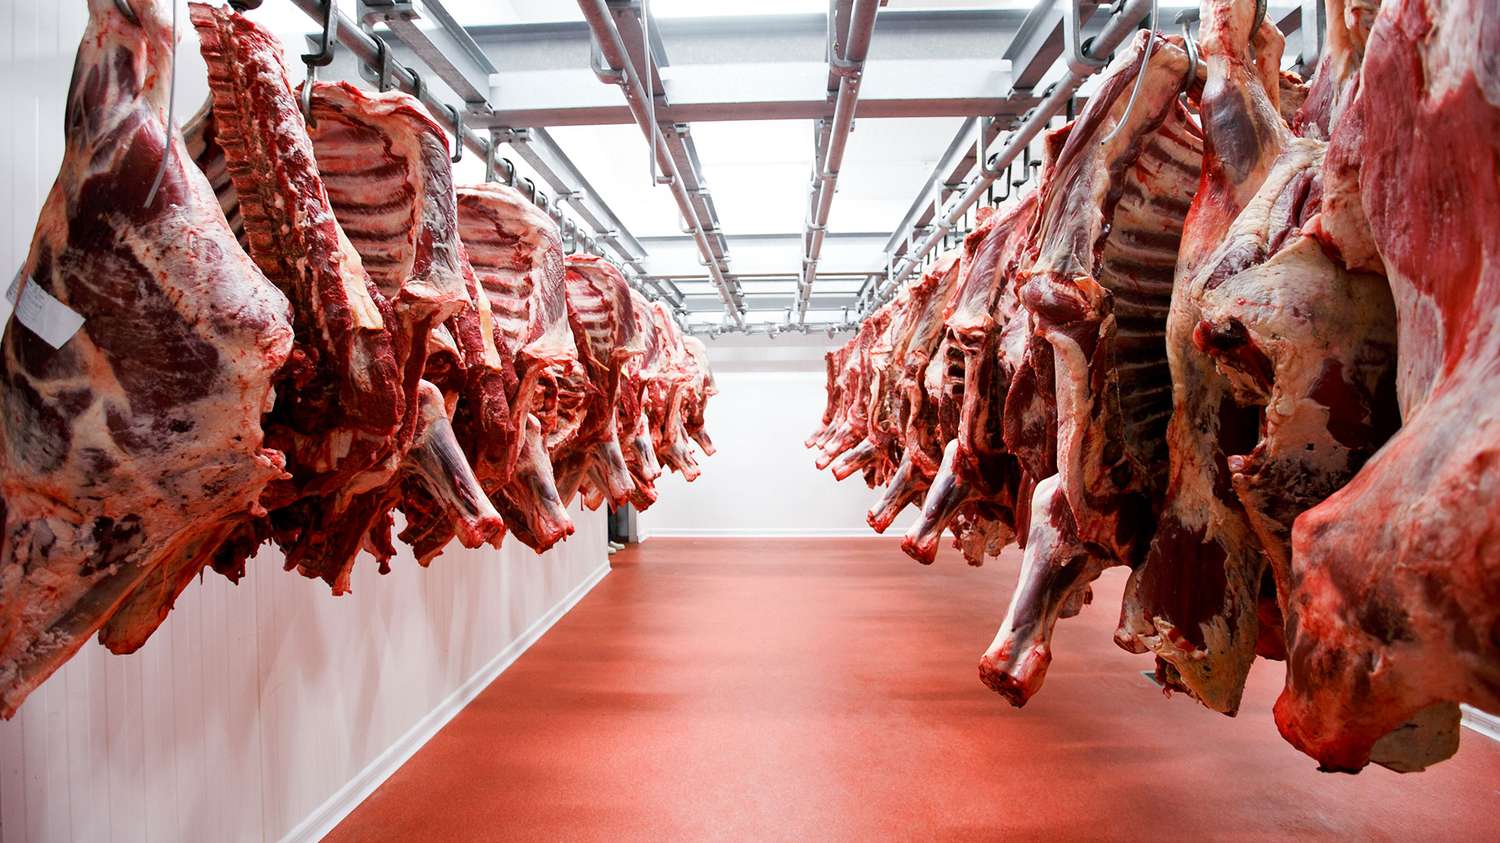 El consumo de carne vacuna cayó a 47,3 kilos por habitante en lo que va del año